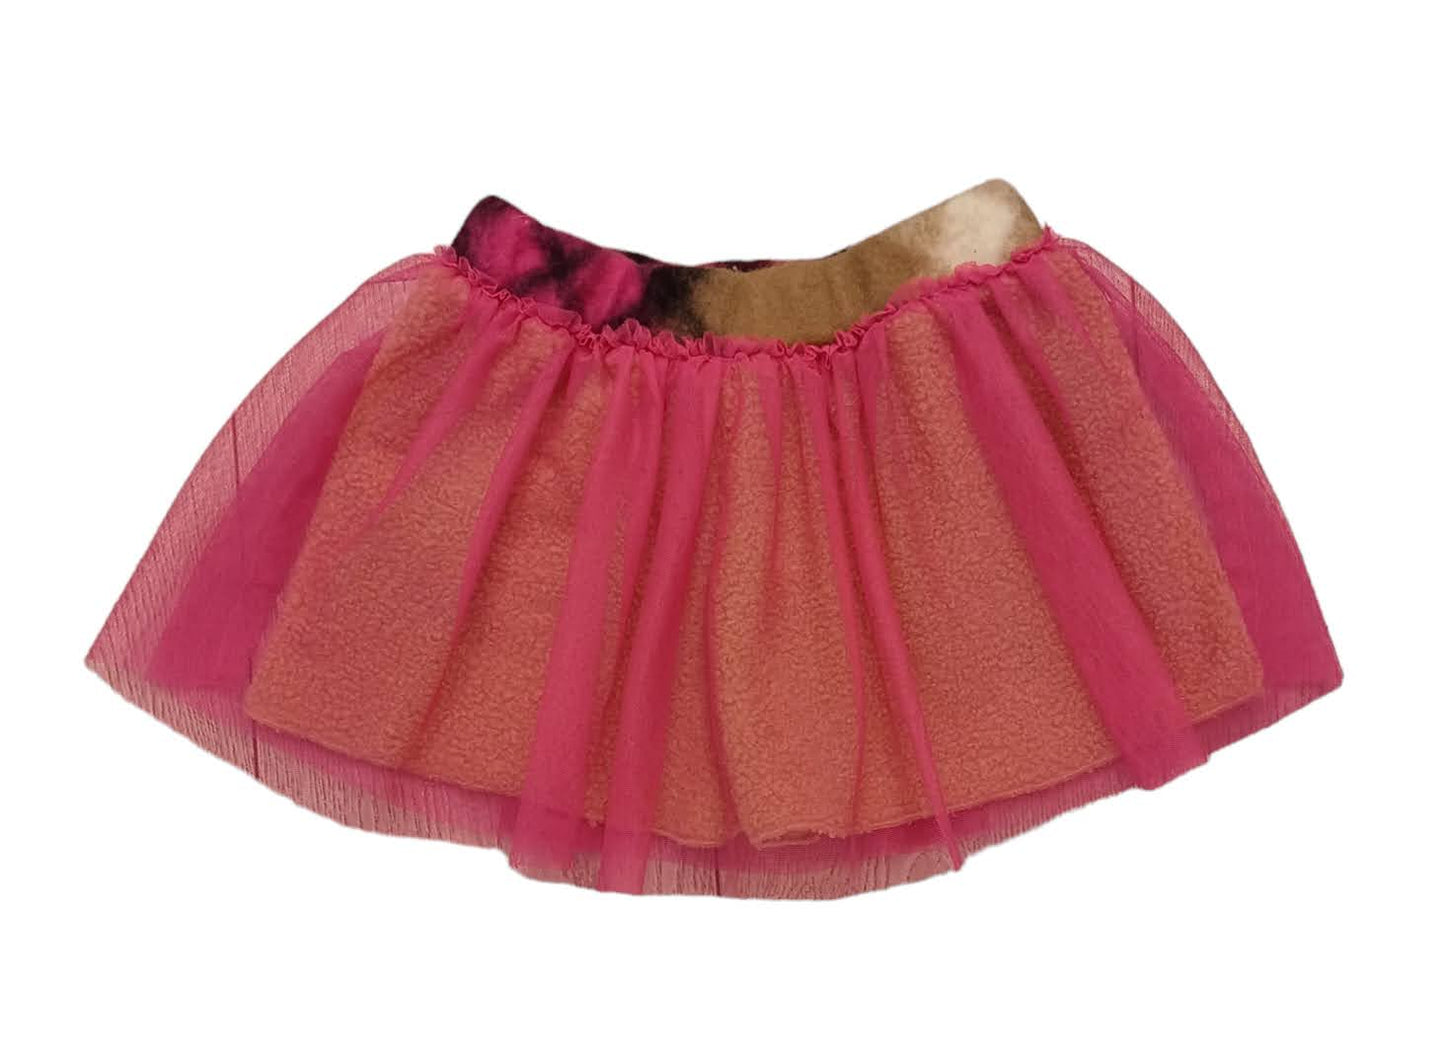 ELSY Baby Short Fuchsia Skirt with Teddy Bears